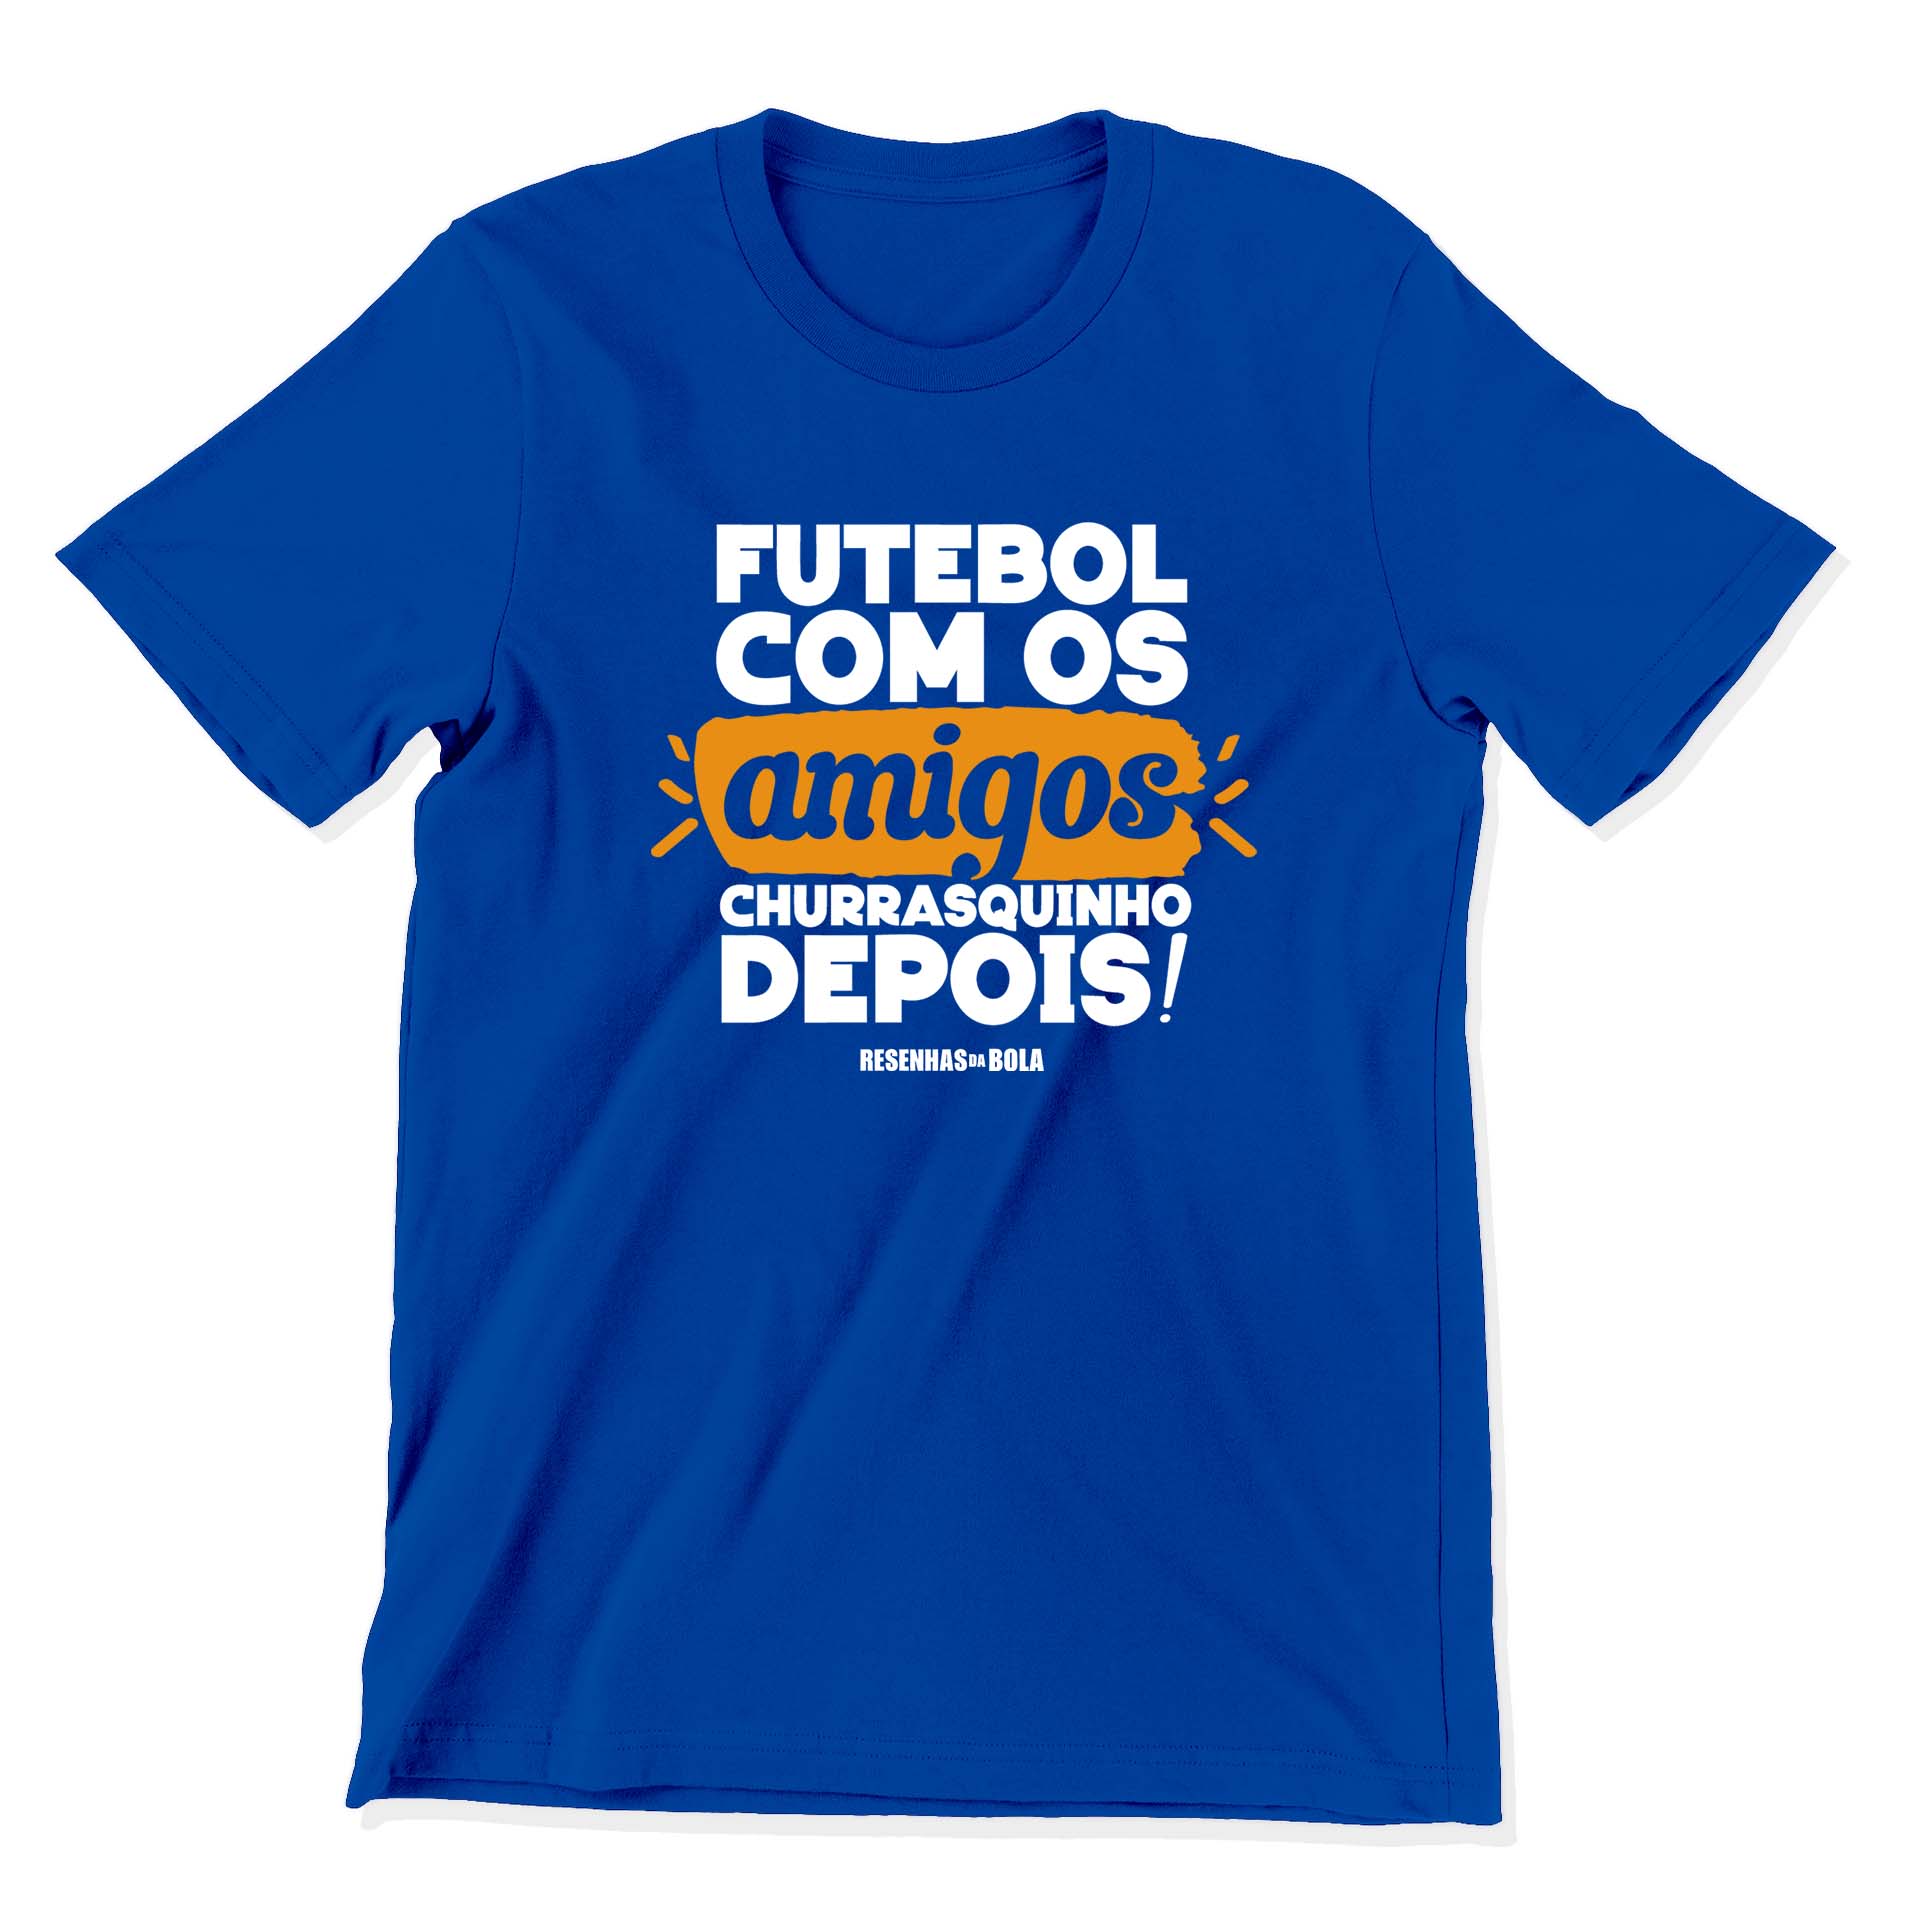 Camiseta - FUTEBOL COM OS AMIGOS, CHURRASQUINHO DEPOIS!